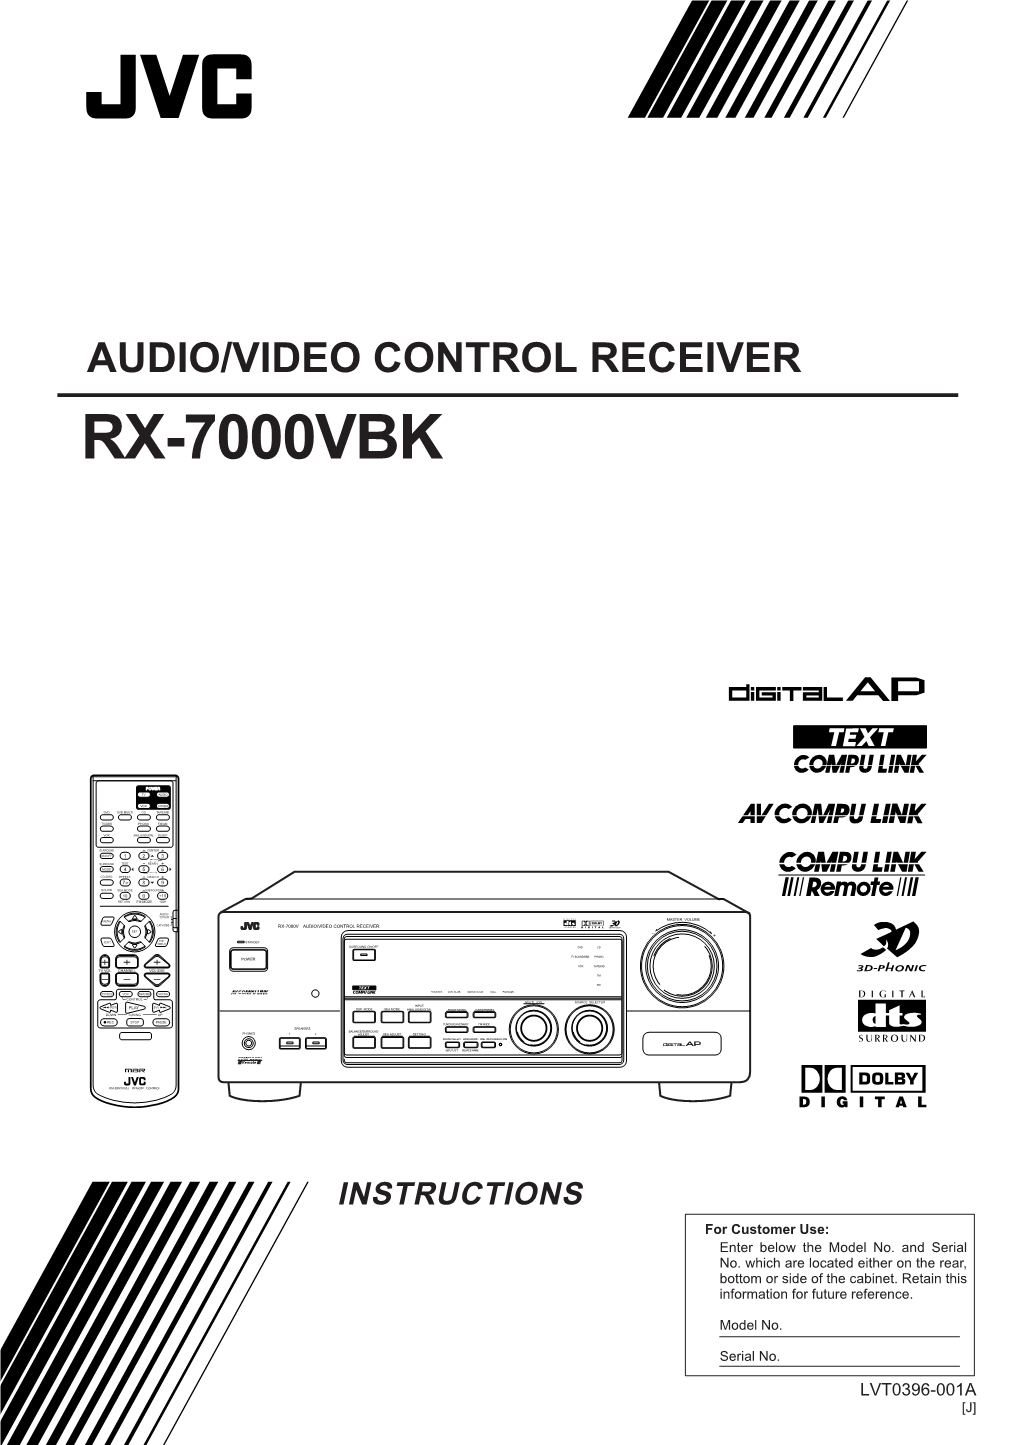 Audio/Video Control Receiver Rx-7000Vbk